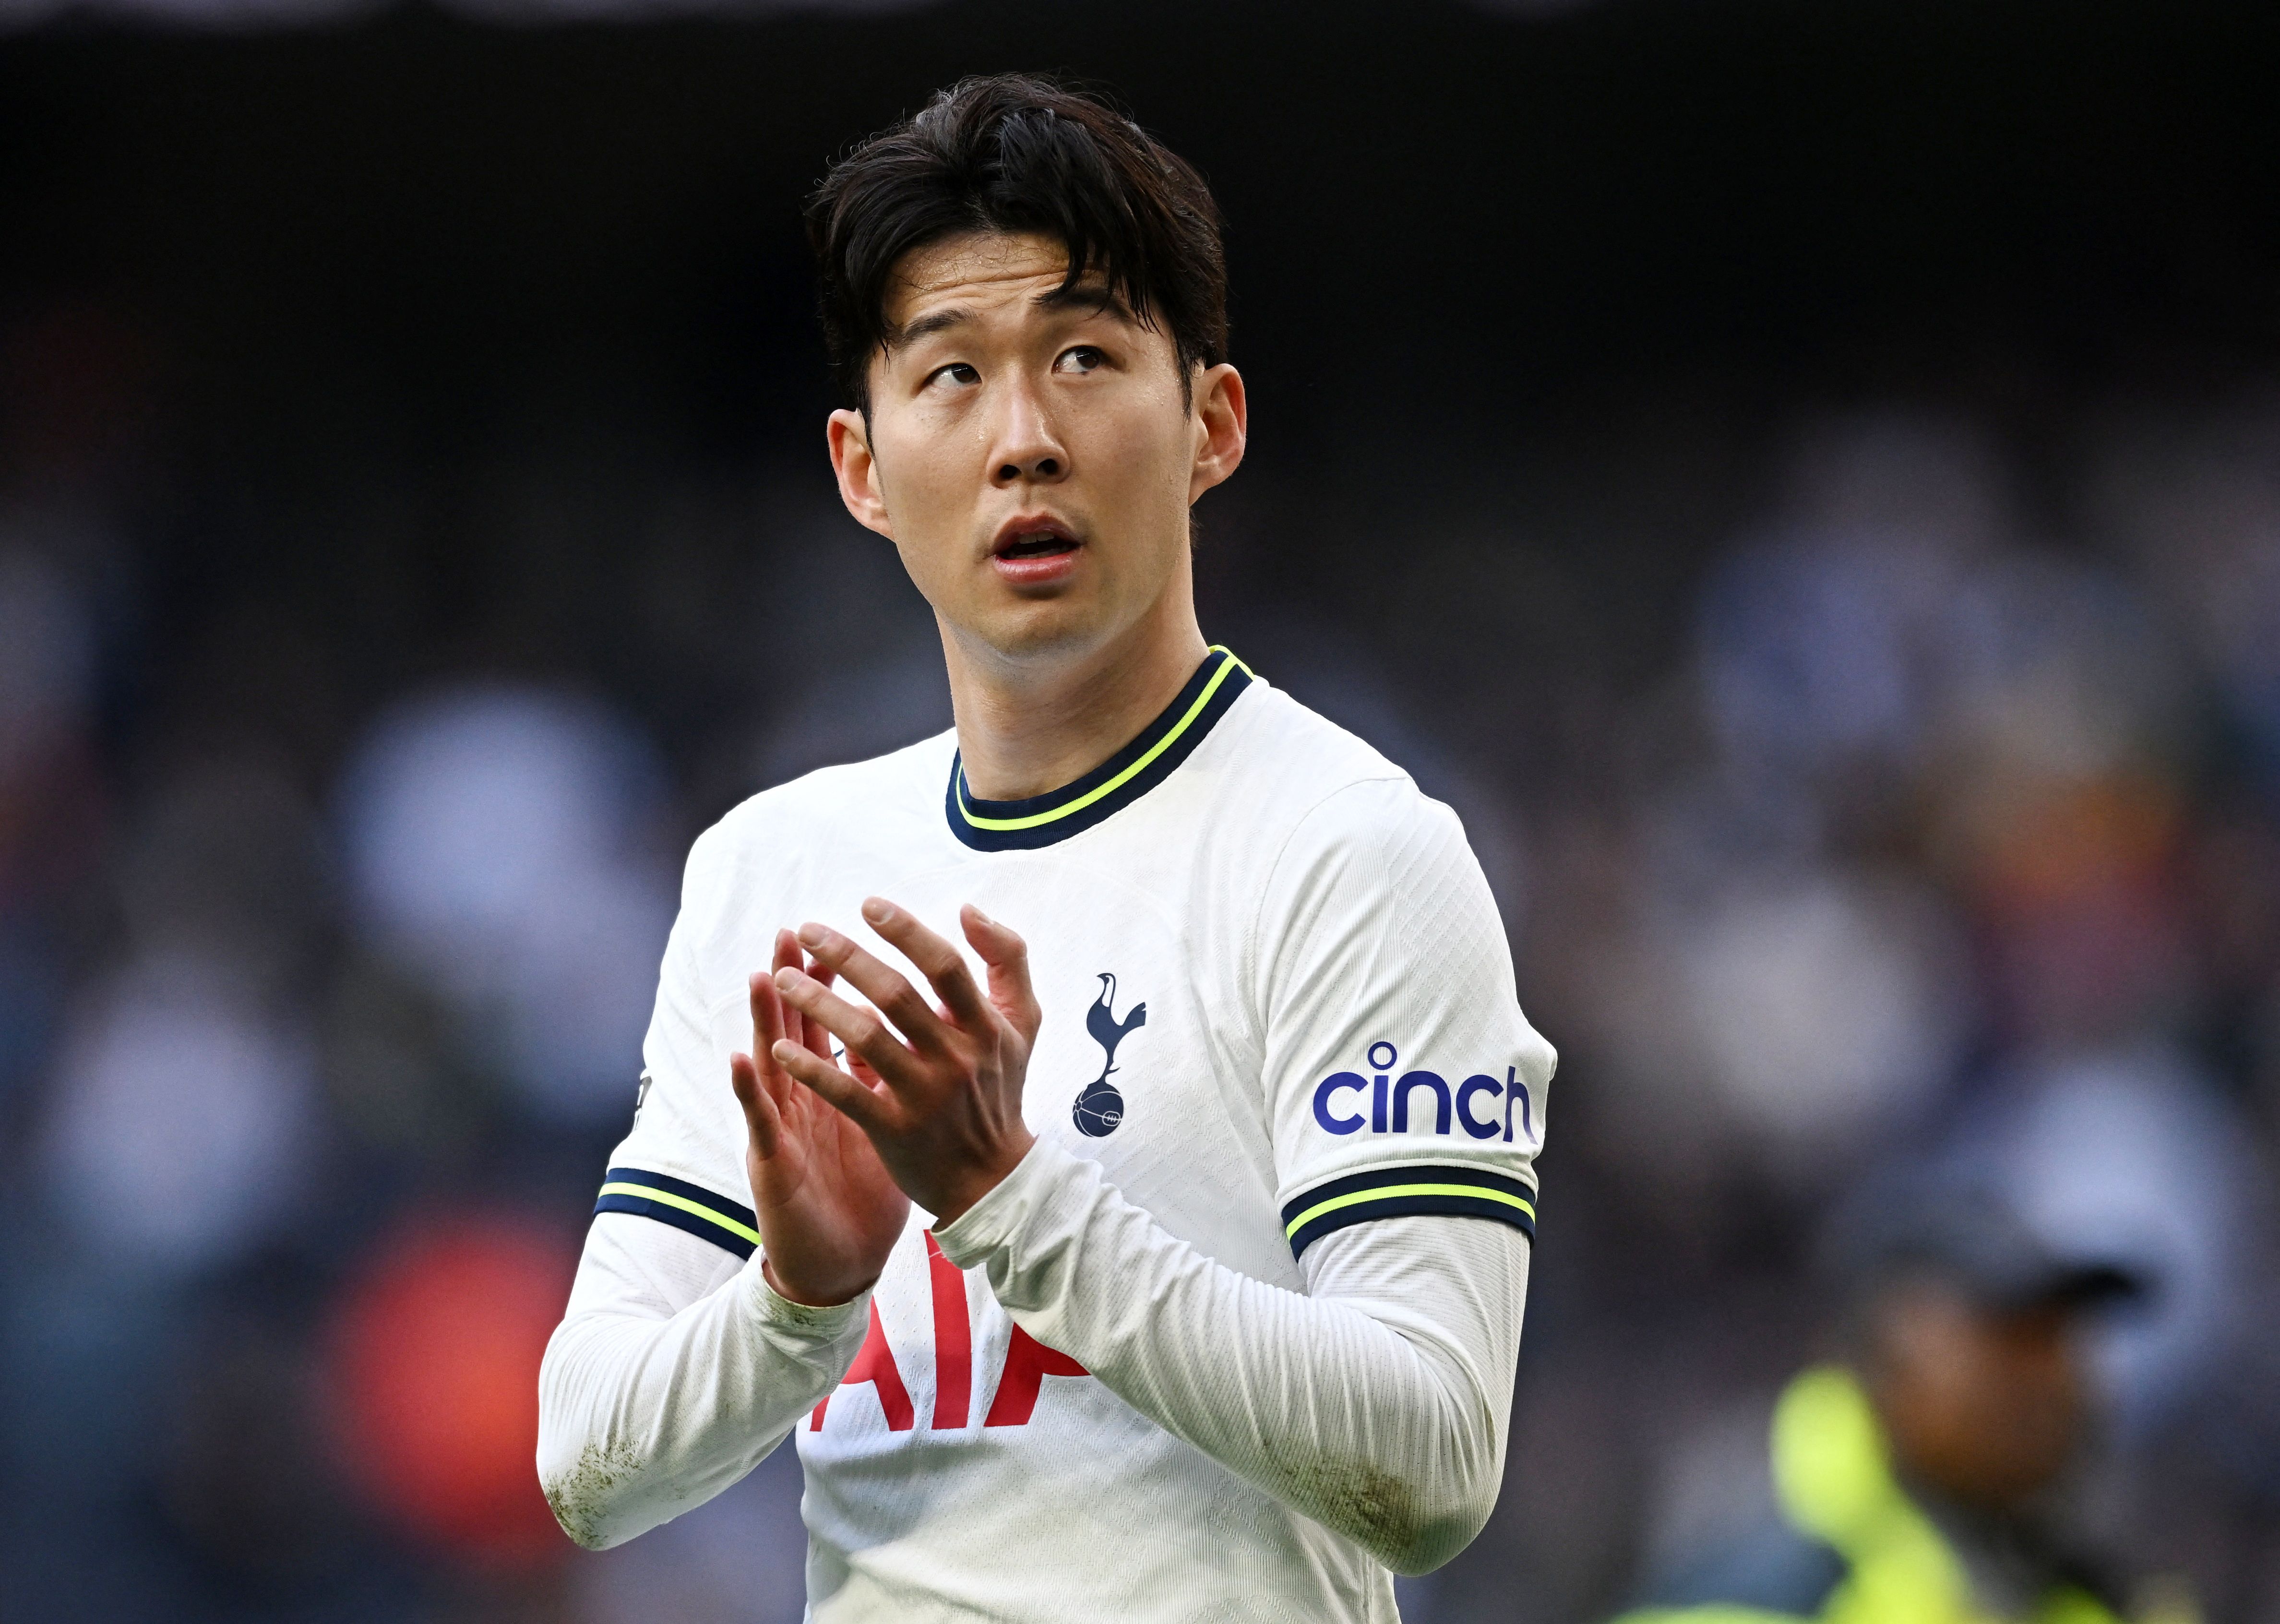 Tottenham Hotspur's Son Heung-min applauds fans after the match